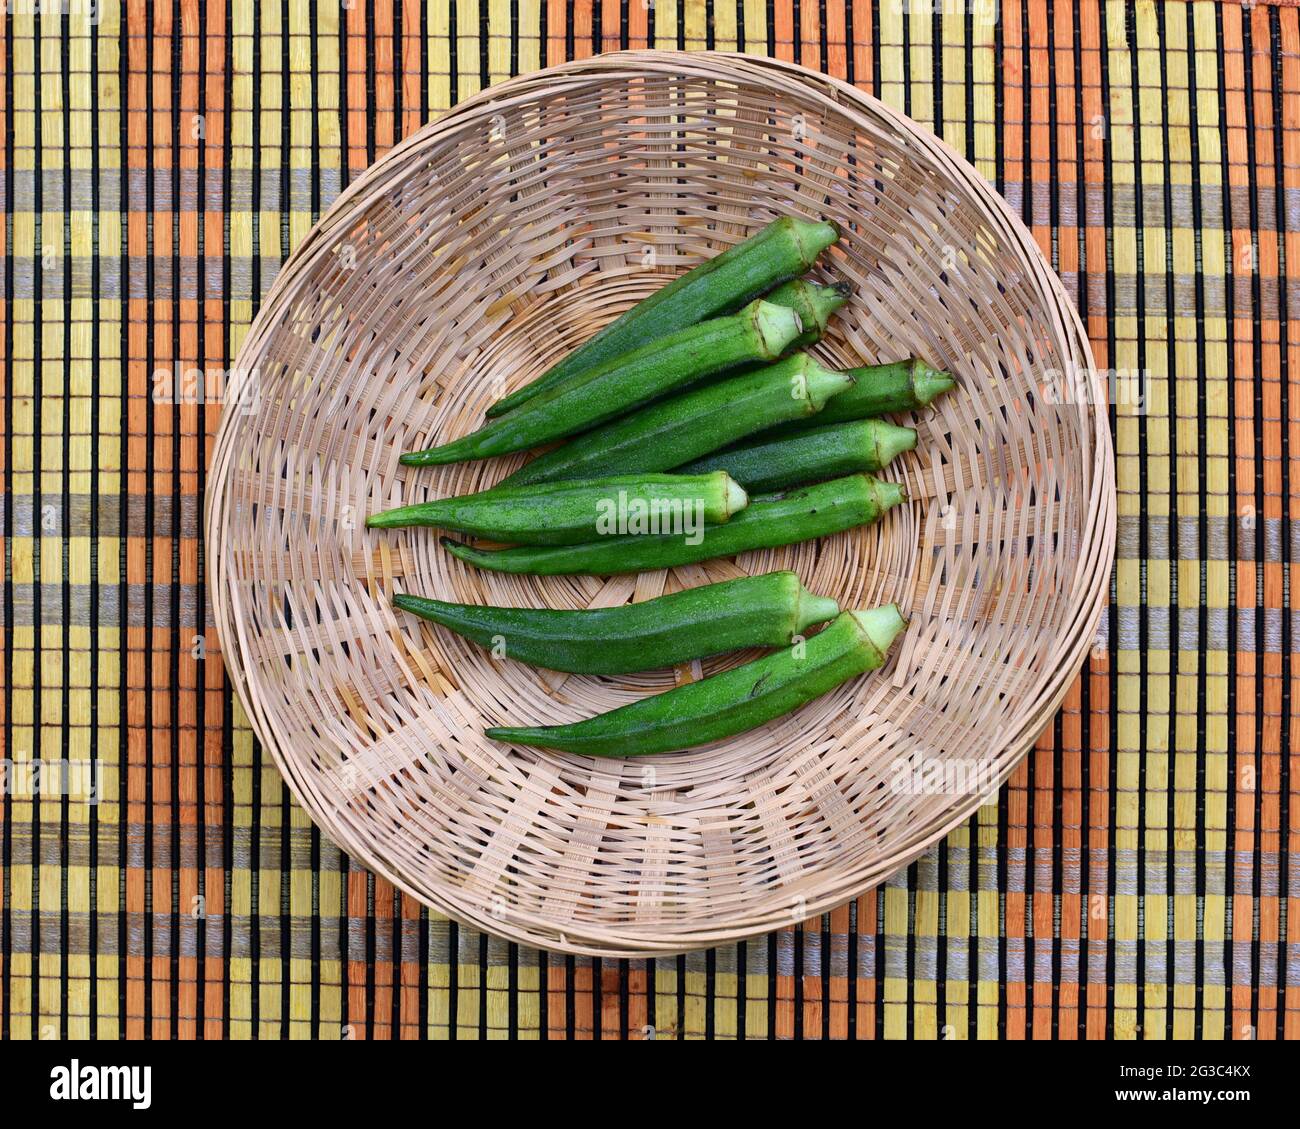 podas de okra verde en una pequeña cesta sobre una alfombra de paja de color Foto de stock